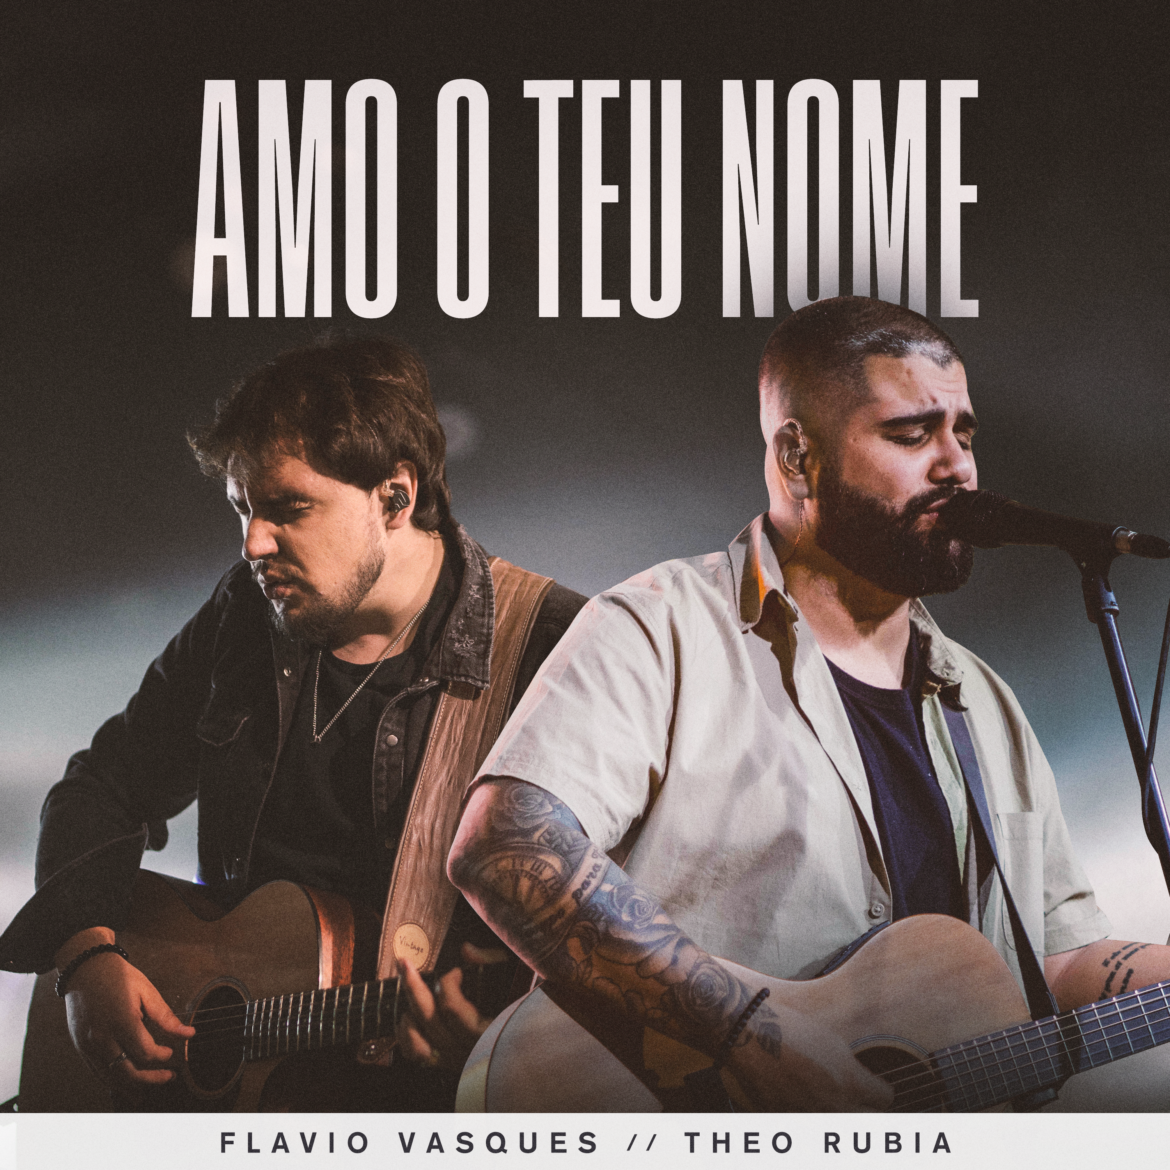 Flávio Vasques lança “Amo o Teu Nome”, collab com Theo Rubia